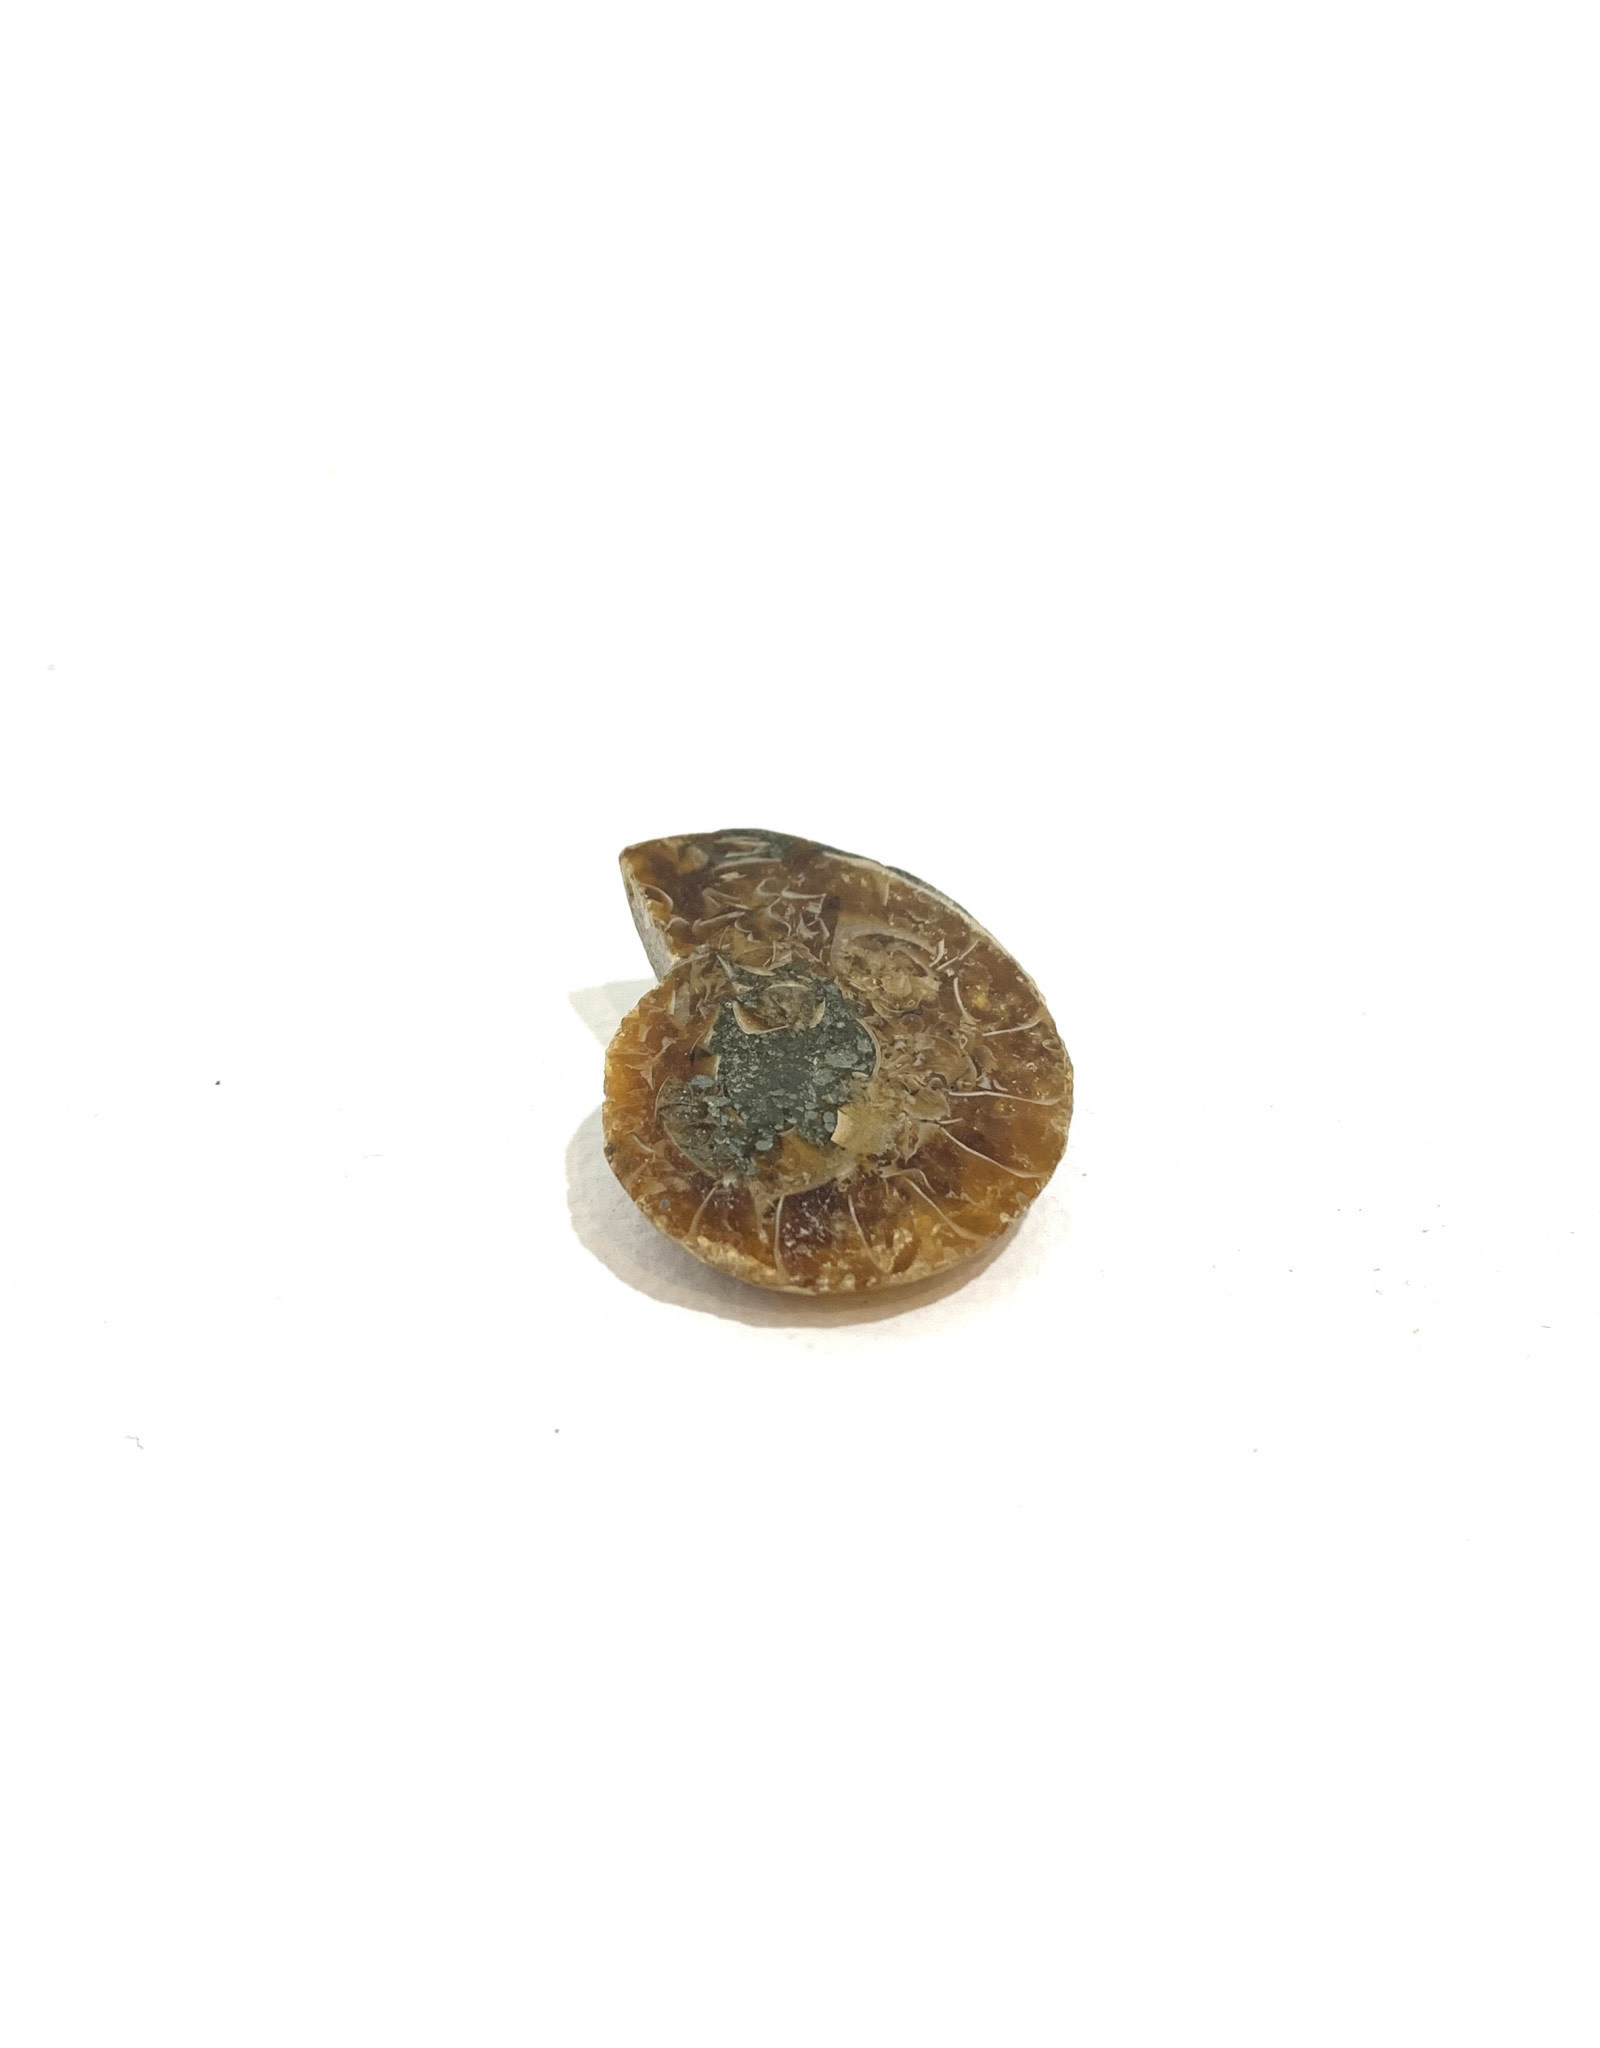 Small Ammonite Fossil Slice